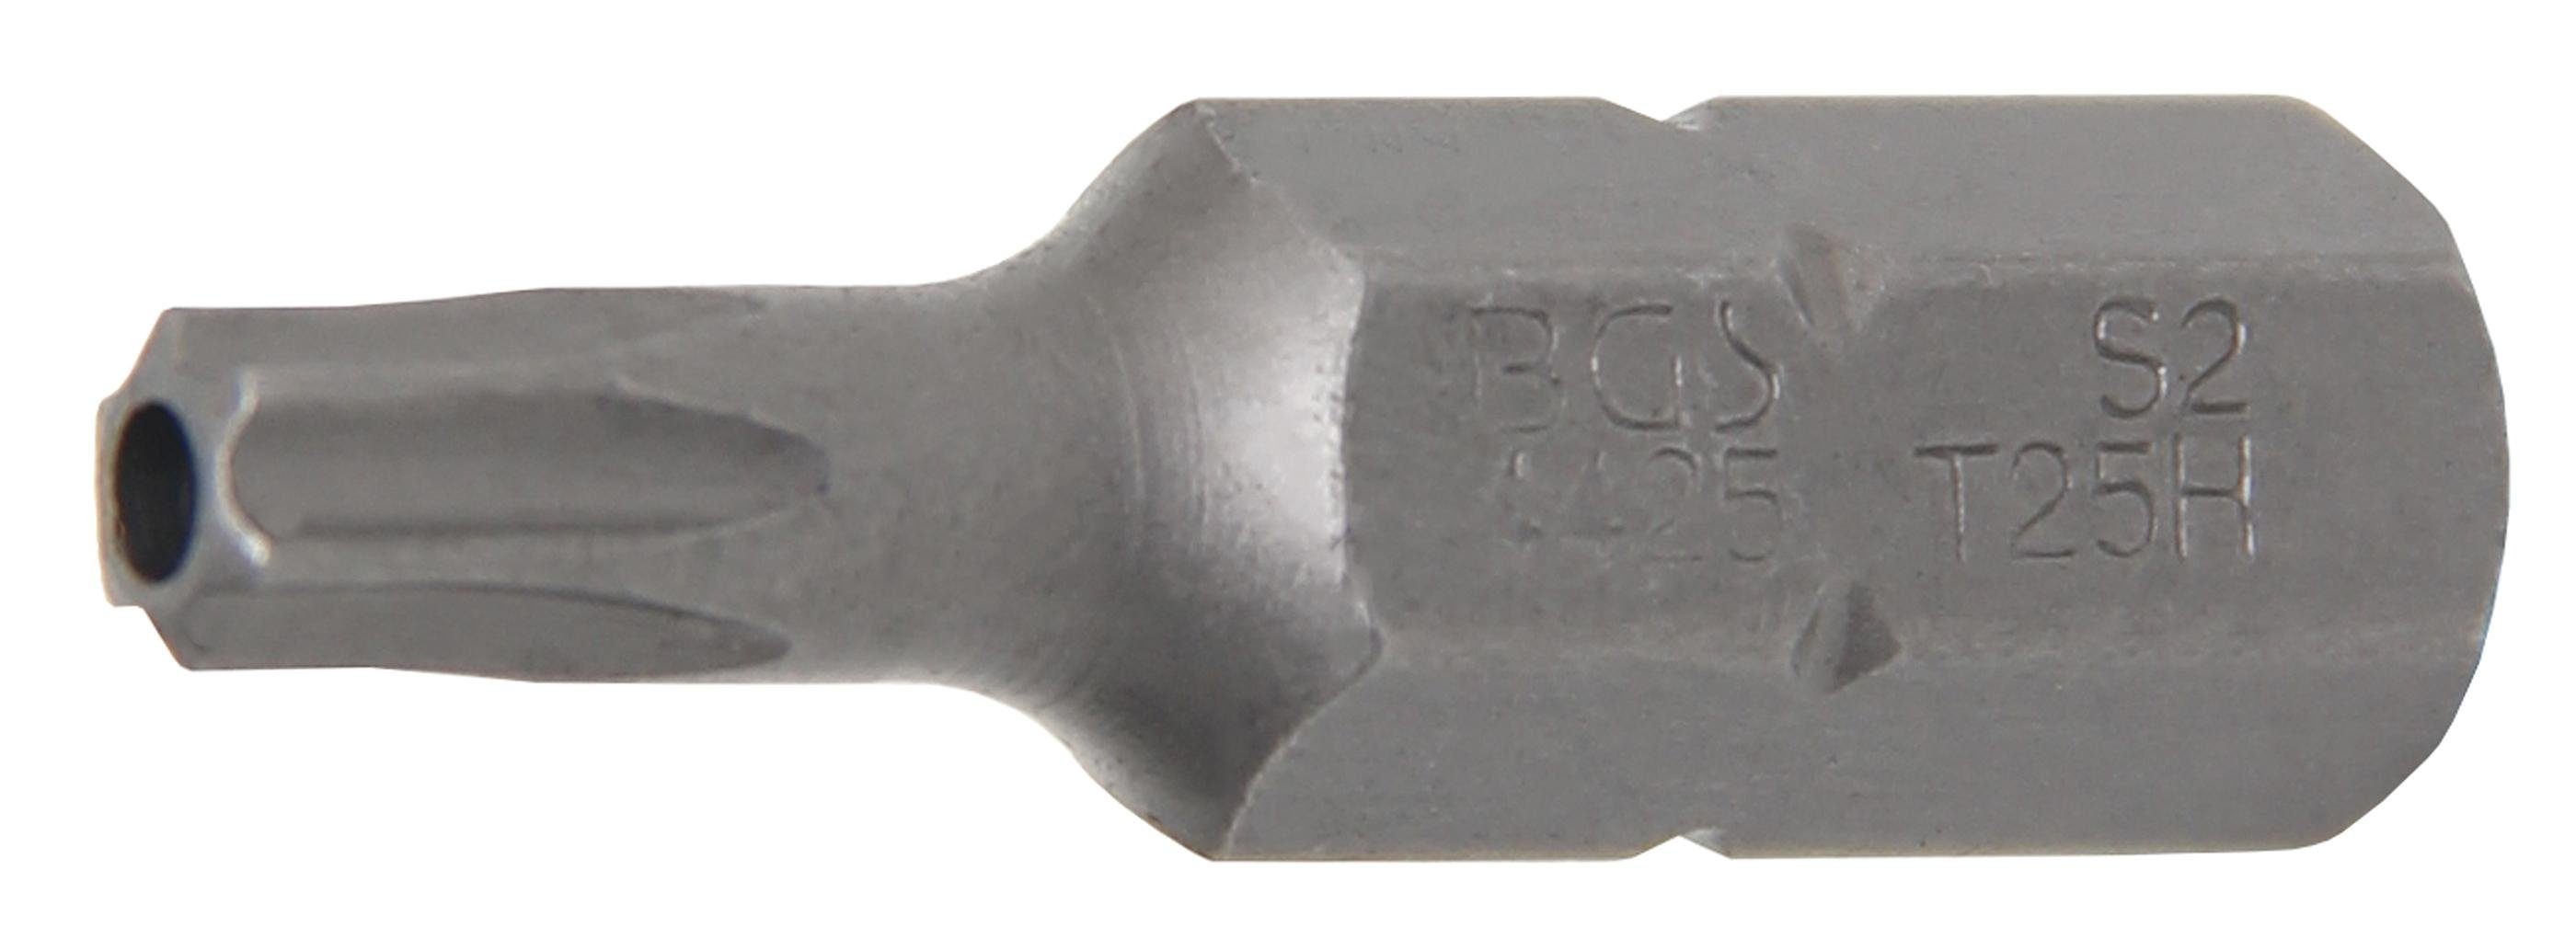 BGS technic Bit-Schraubendreher Bit, Länge 30 mm, Antrieb Außensechskant 8 mm (5/16), T-Profil (für Torx) mit Bohrung T25